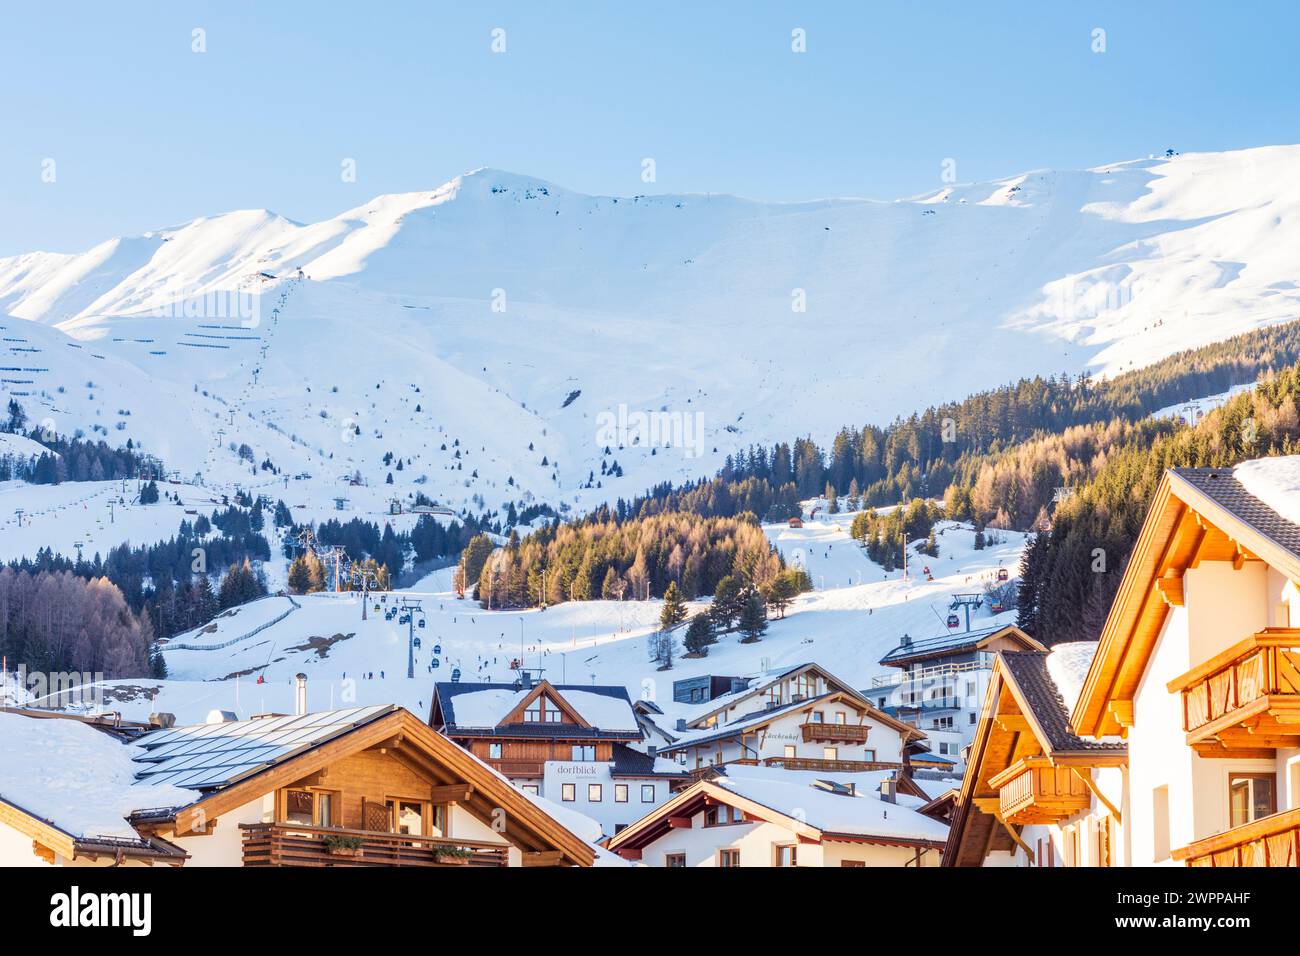 Fiss, village Fiss, remontées mécaniques, piste de ski, ski alpin, Alpes de Samnaun à Serfaus-Fiss-Ladis, Tyrol, Tyrol, Autriche Banque D'Images